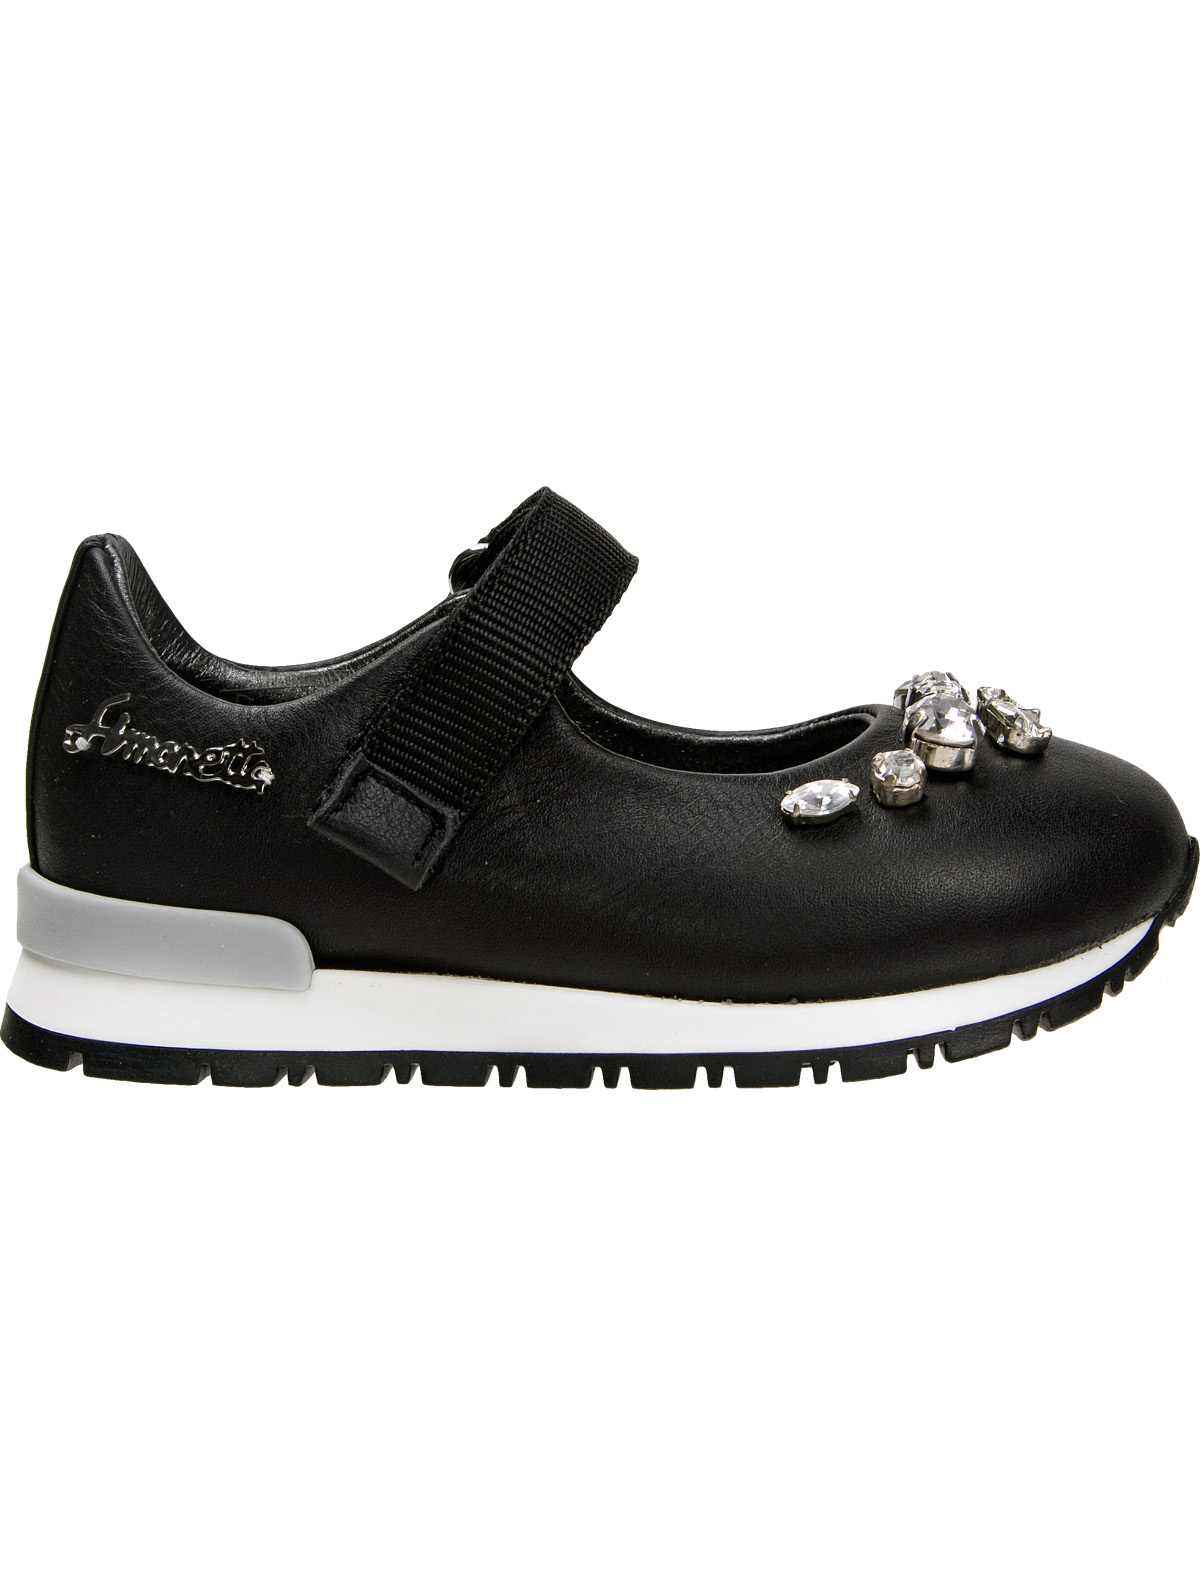 Туфли Simonetta 1912970, цвет черный, размер 24 2011109780340 - фото 2